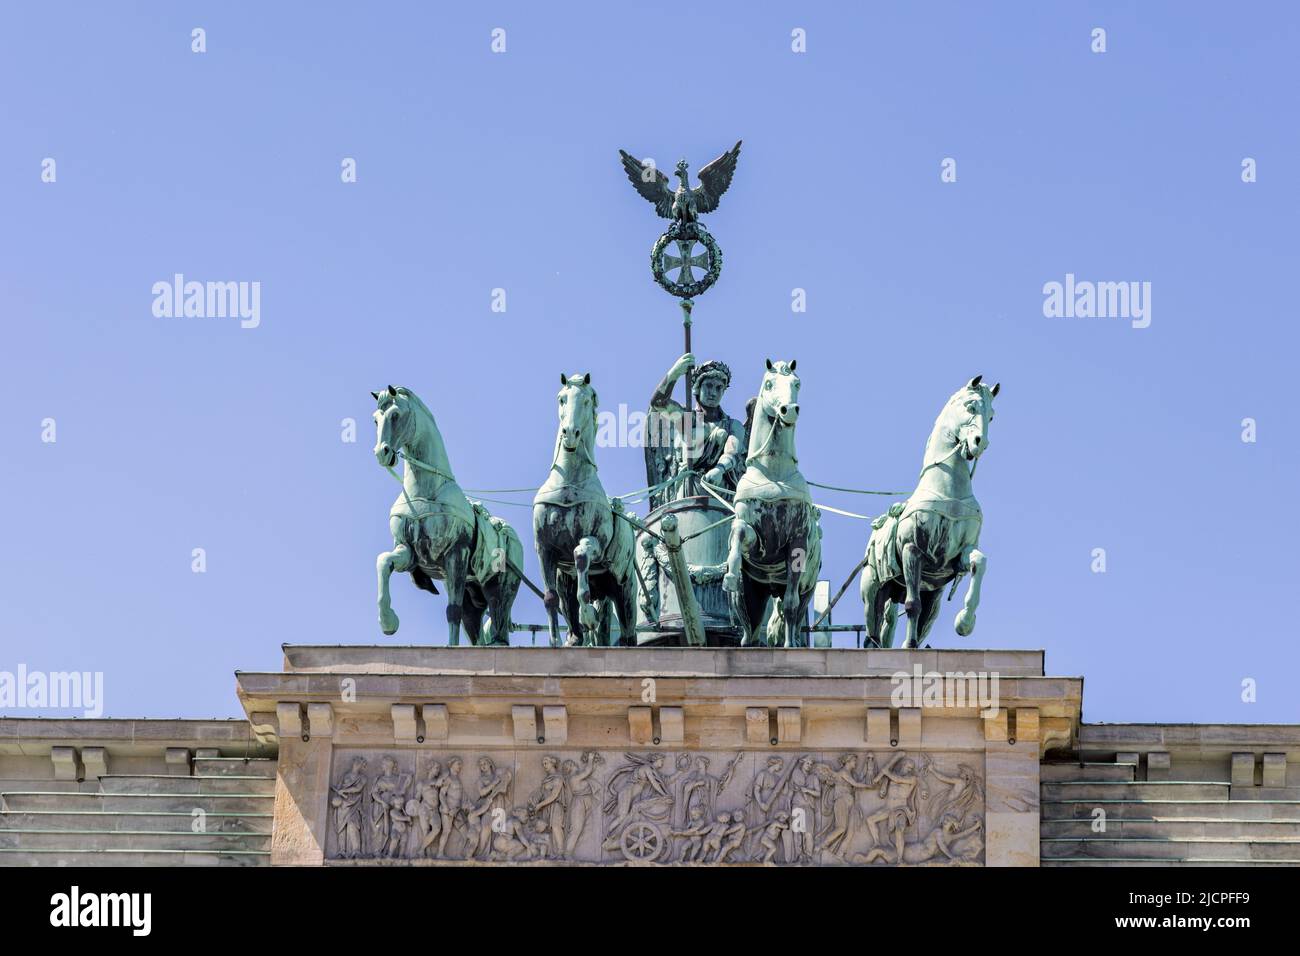 Die Quadriga auf dem Brandenburger Tor in Berlin, mit einem Wagen, der von vier Pferden gezogen wird, die von Victoria, der römischen Siegesgöttin, angetrieben werden. Stockfoto